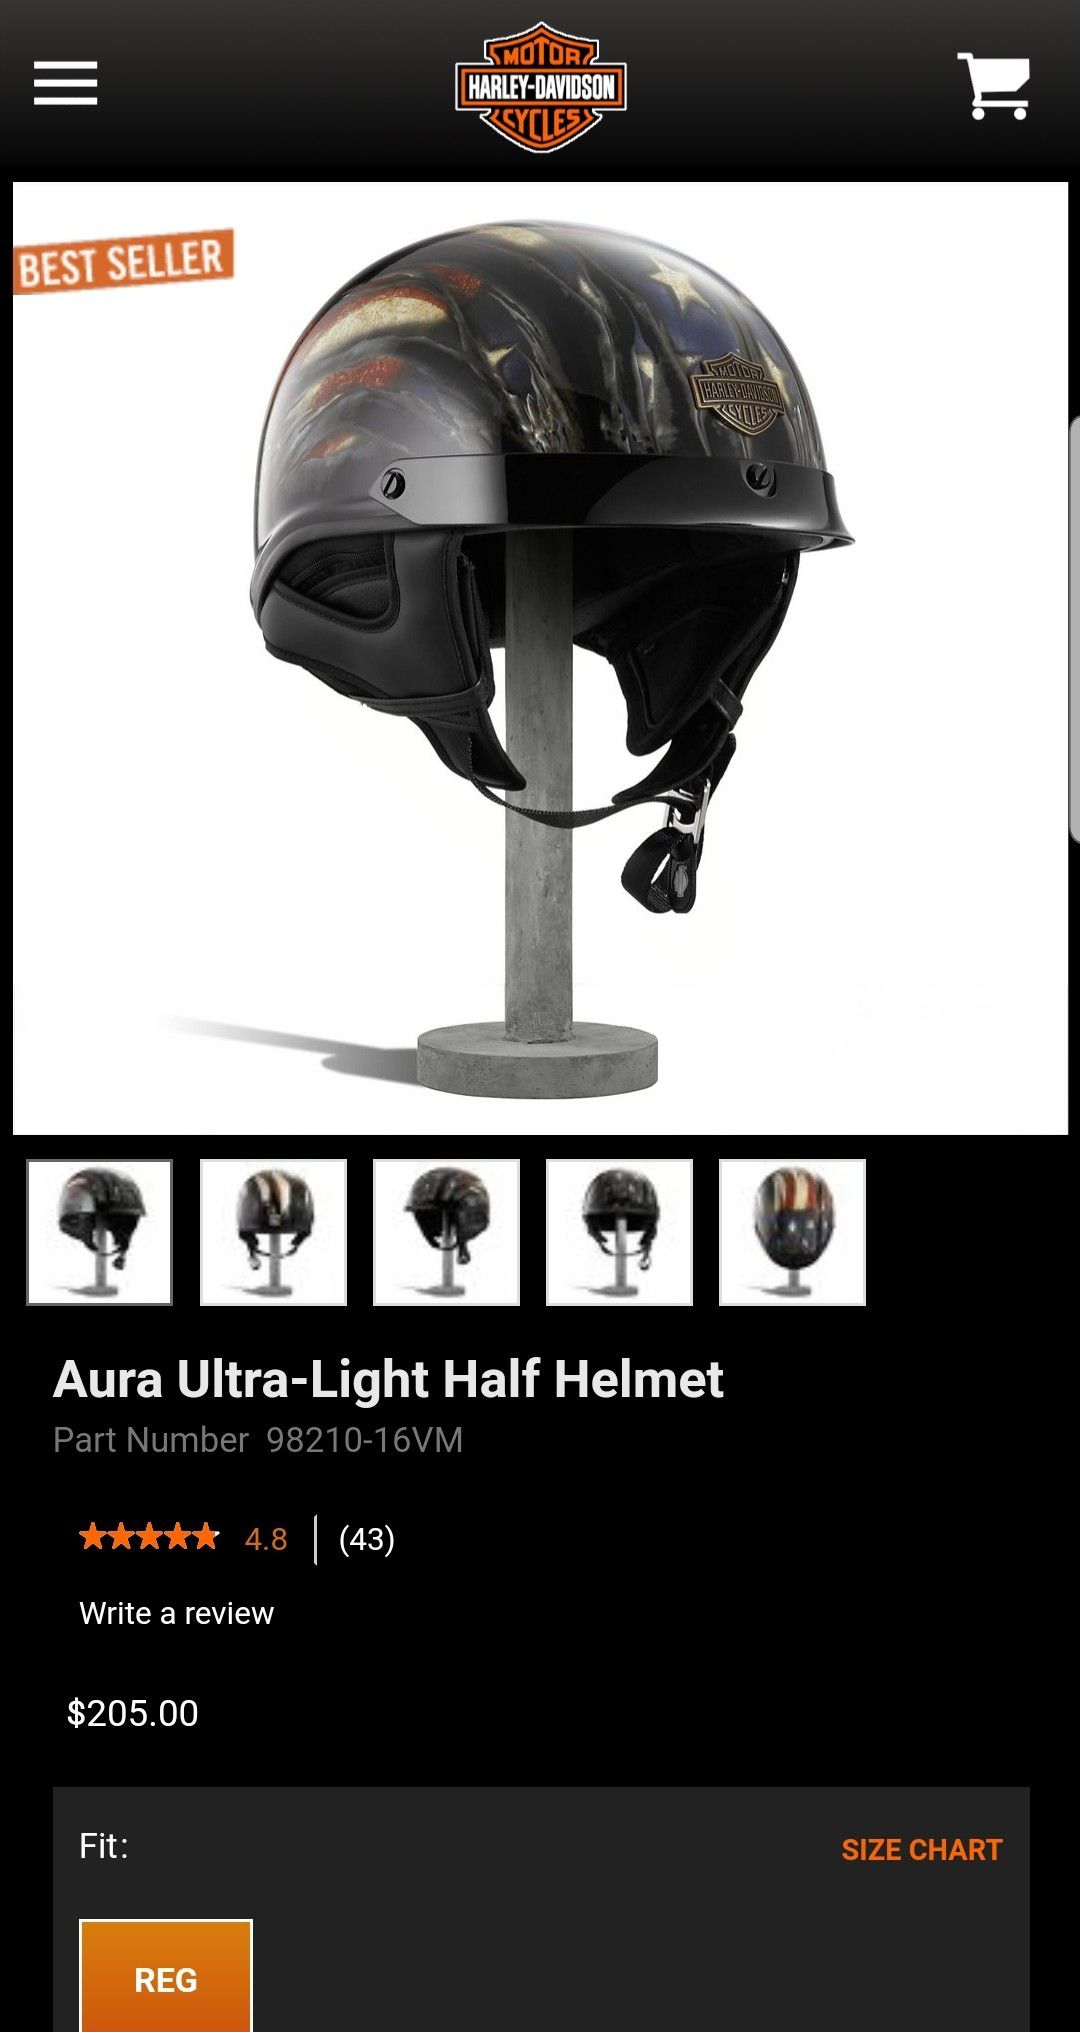 Harley Davidson Ultra Light Half Helmet